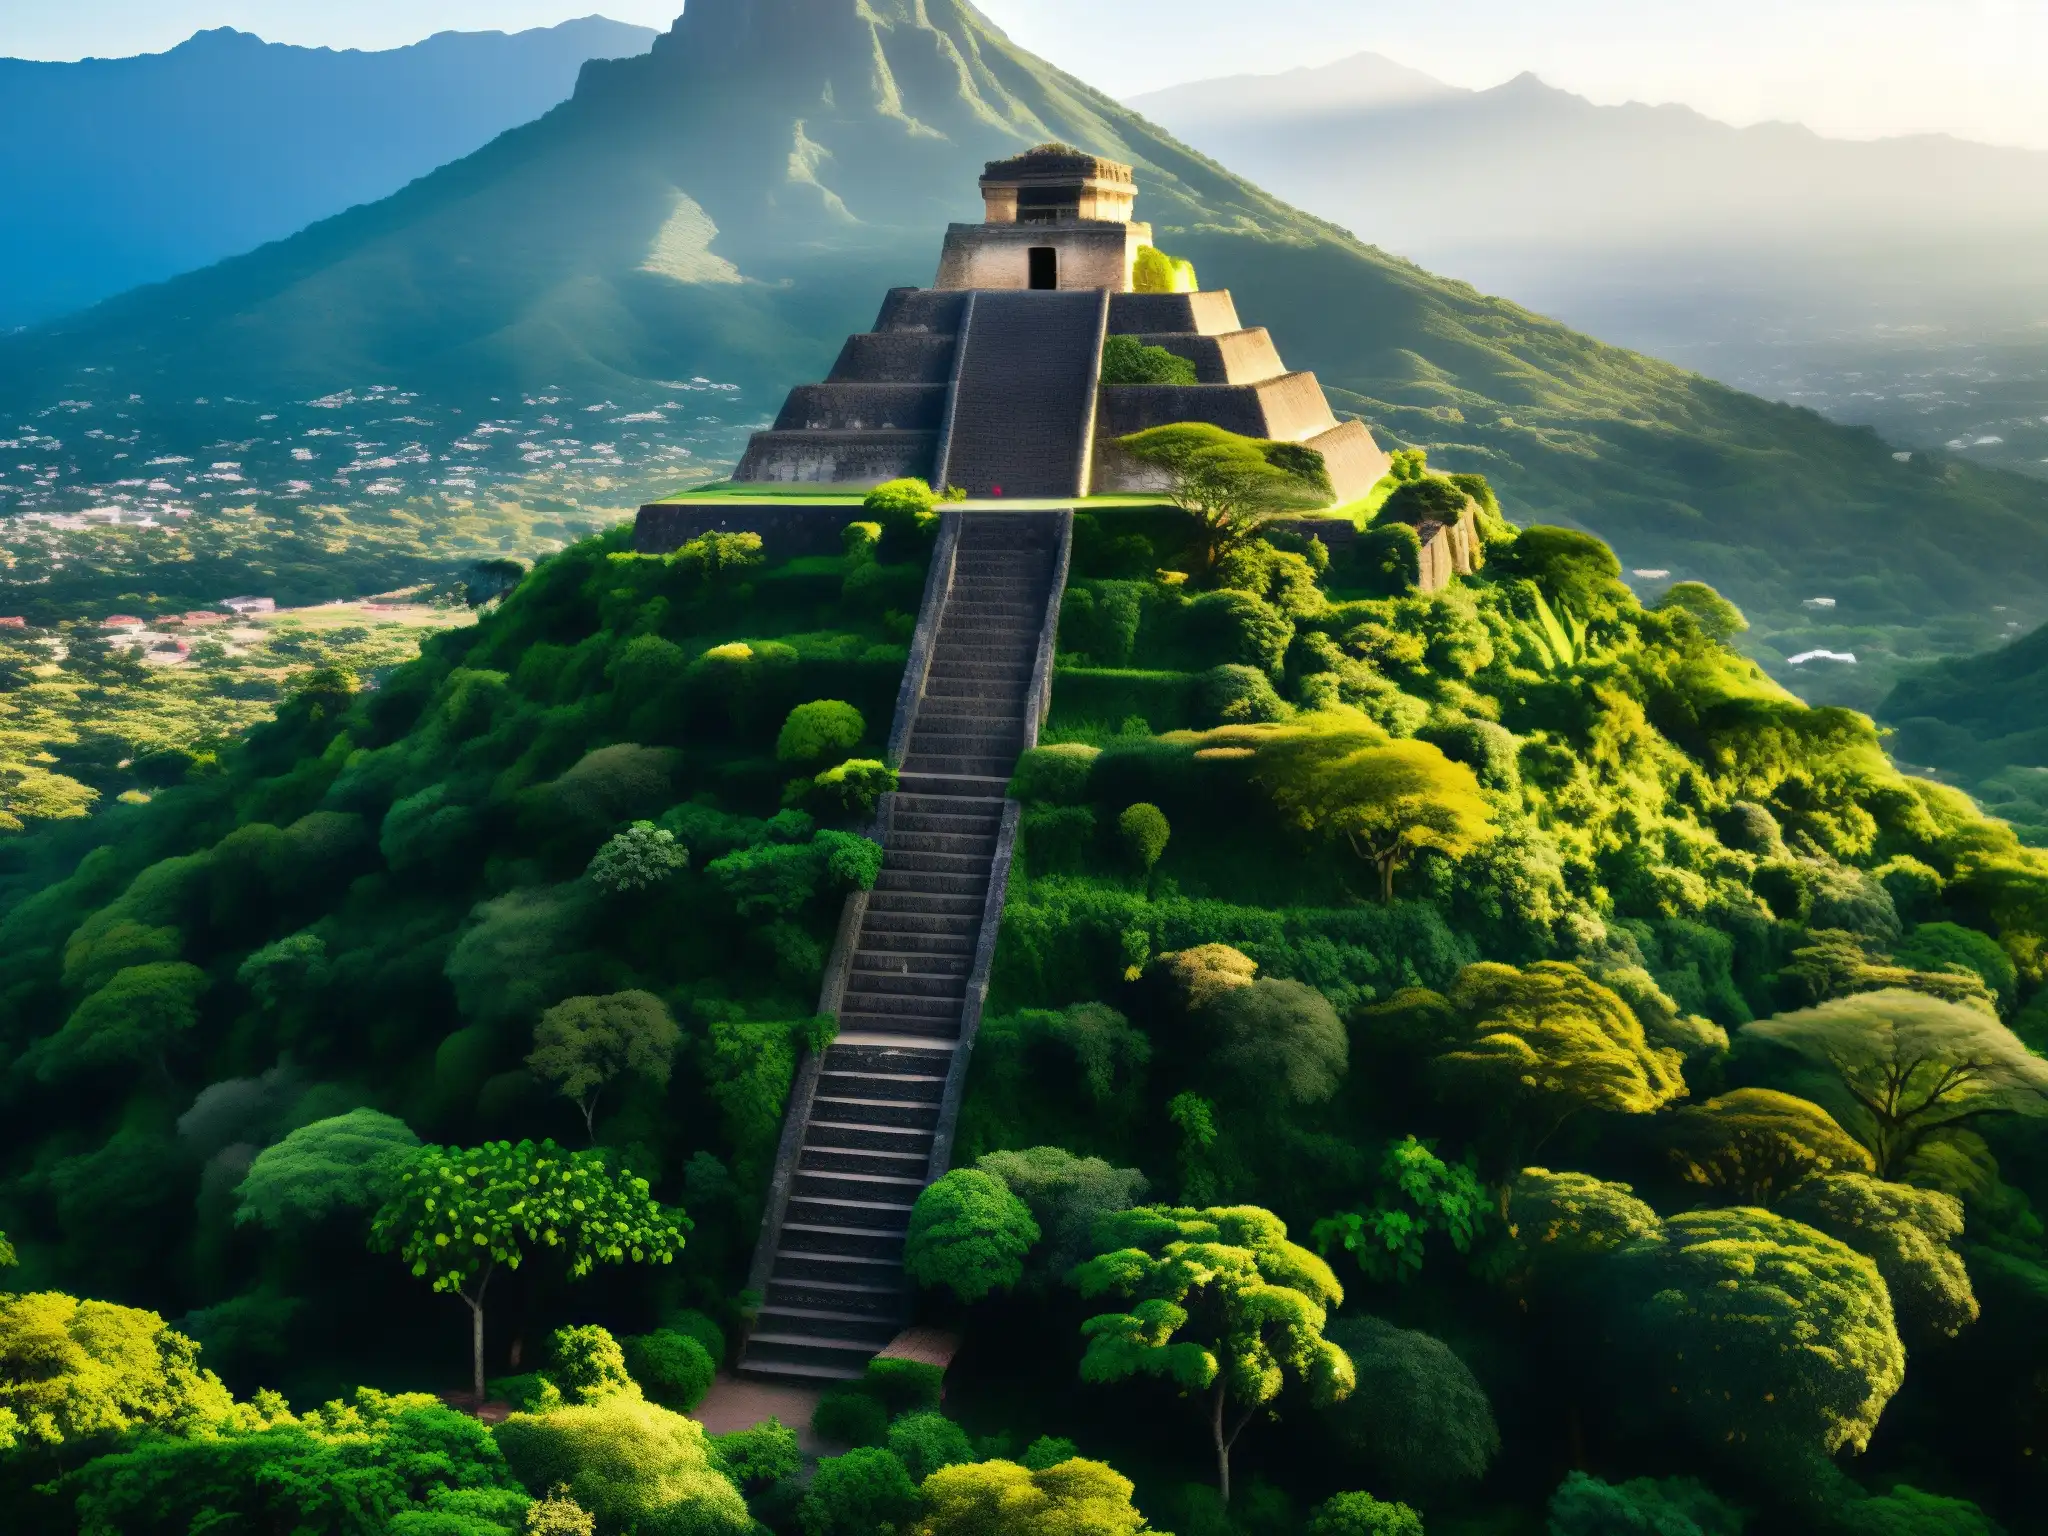 La legendaria Piedra Encantada del Tepozteco entre exuberante vegetación en Morelos, con una cálida luz dorada sobre la antigua pirámide